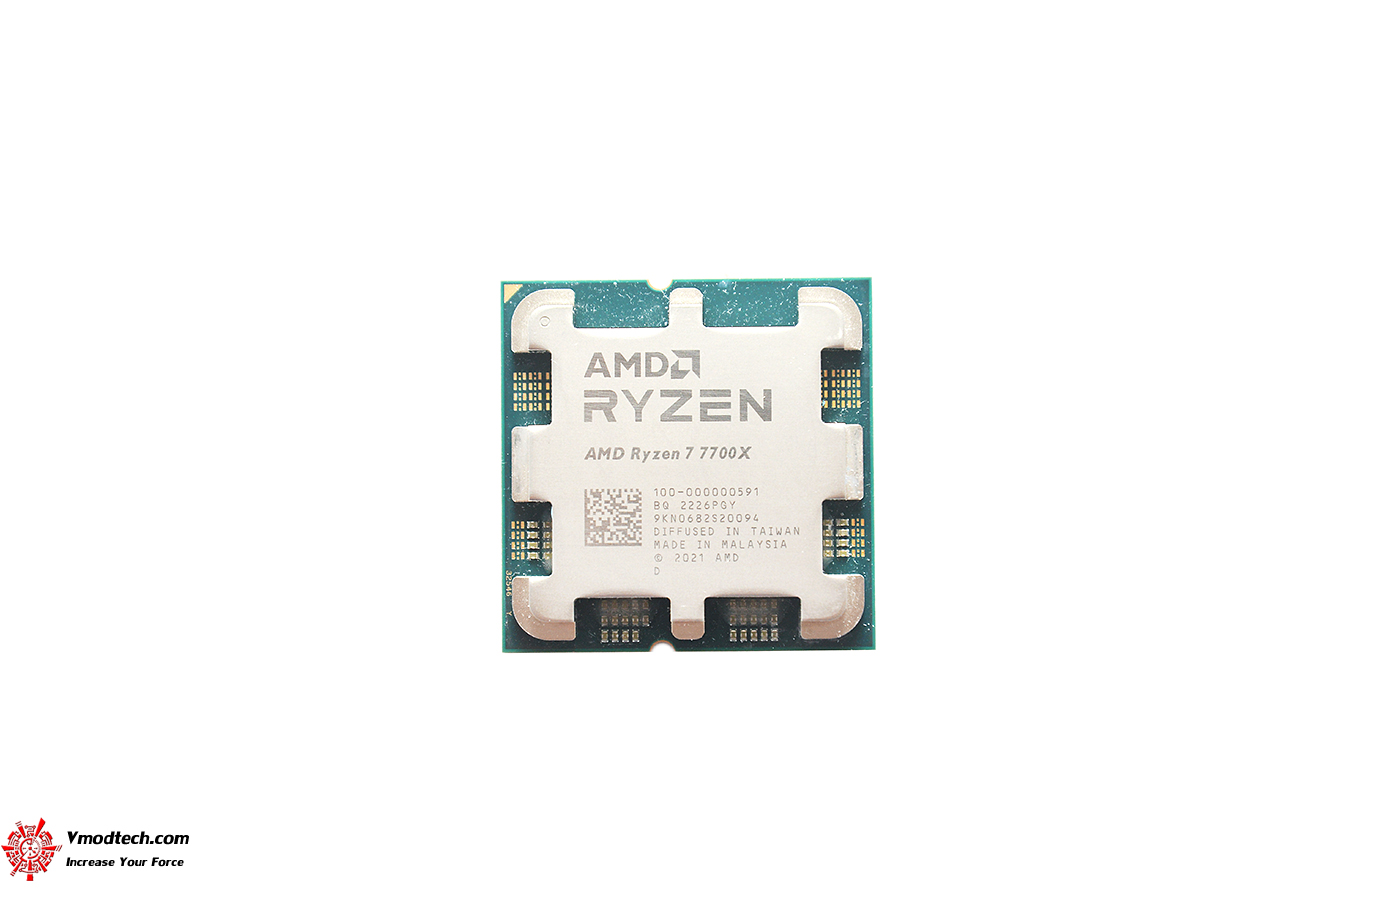 dsc 2030 AMD RYZEN 7 7700X PROCESSOR REVIEW